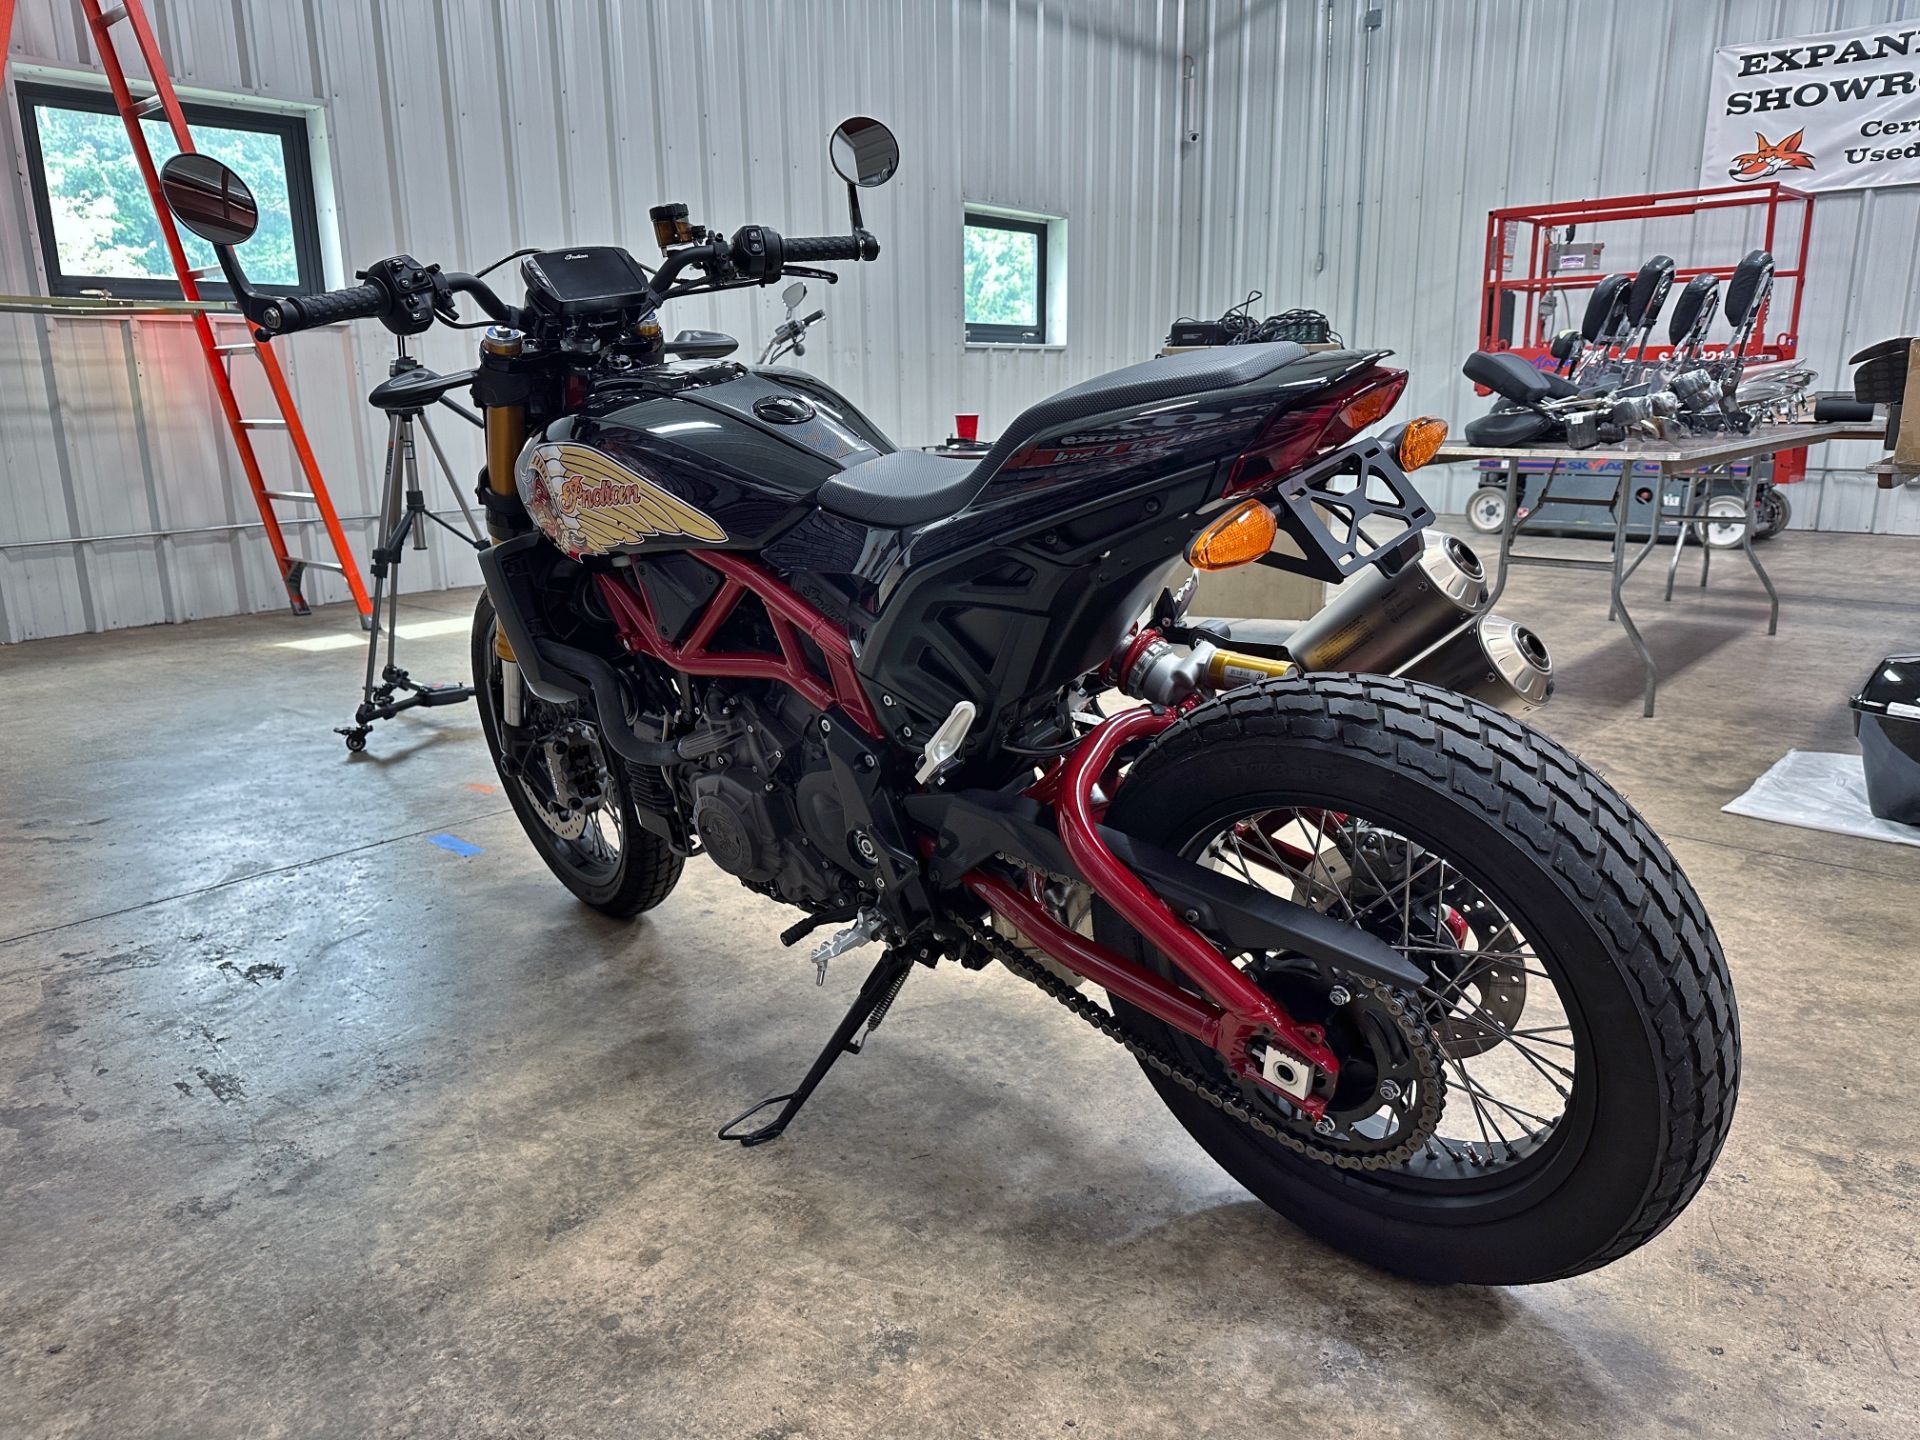 2019 Indian Motorcycle FTR™ 1200 S in Sandusky, Ohio - Photo 6